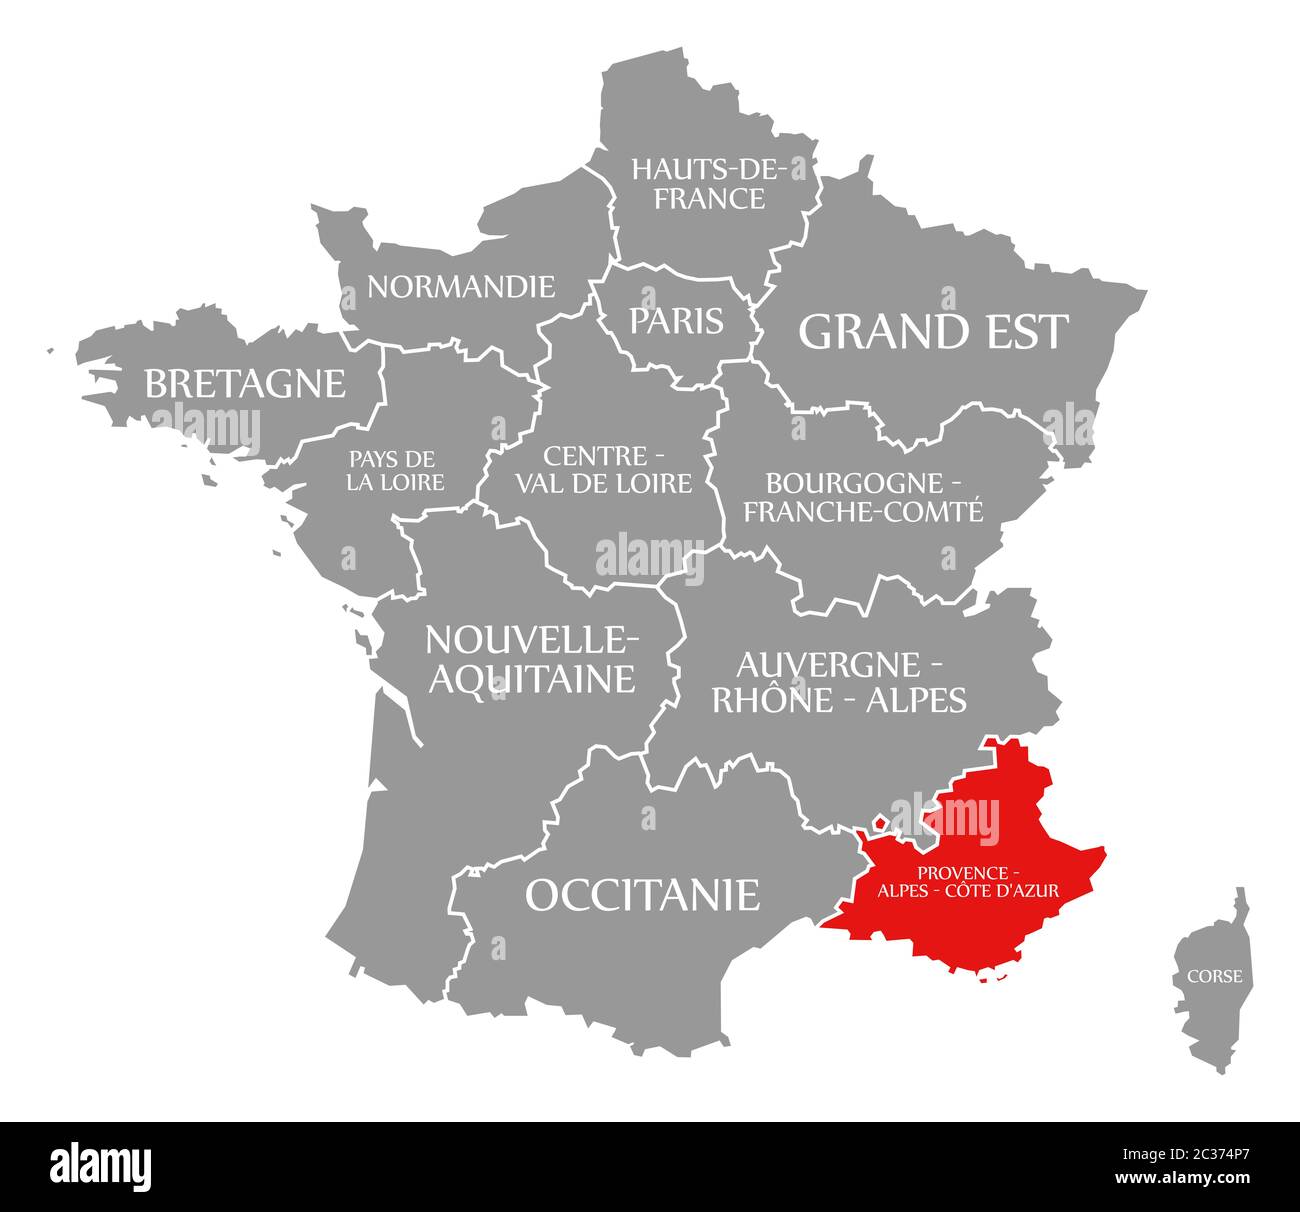 Provence - Alpes - Côte d'Azur en surbrillance rouge dans la carte de France Banque D'Images